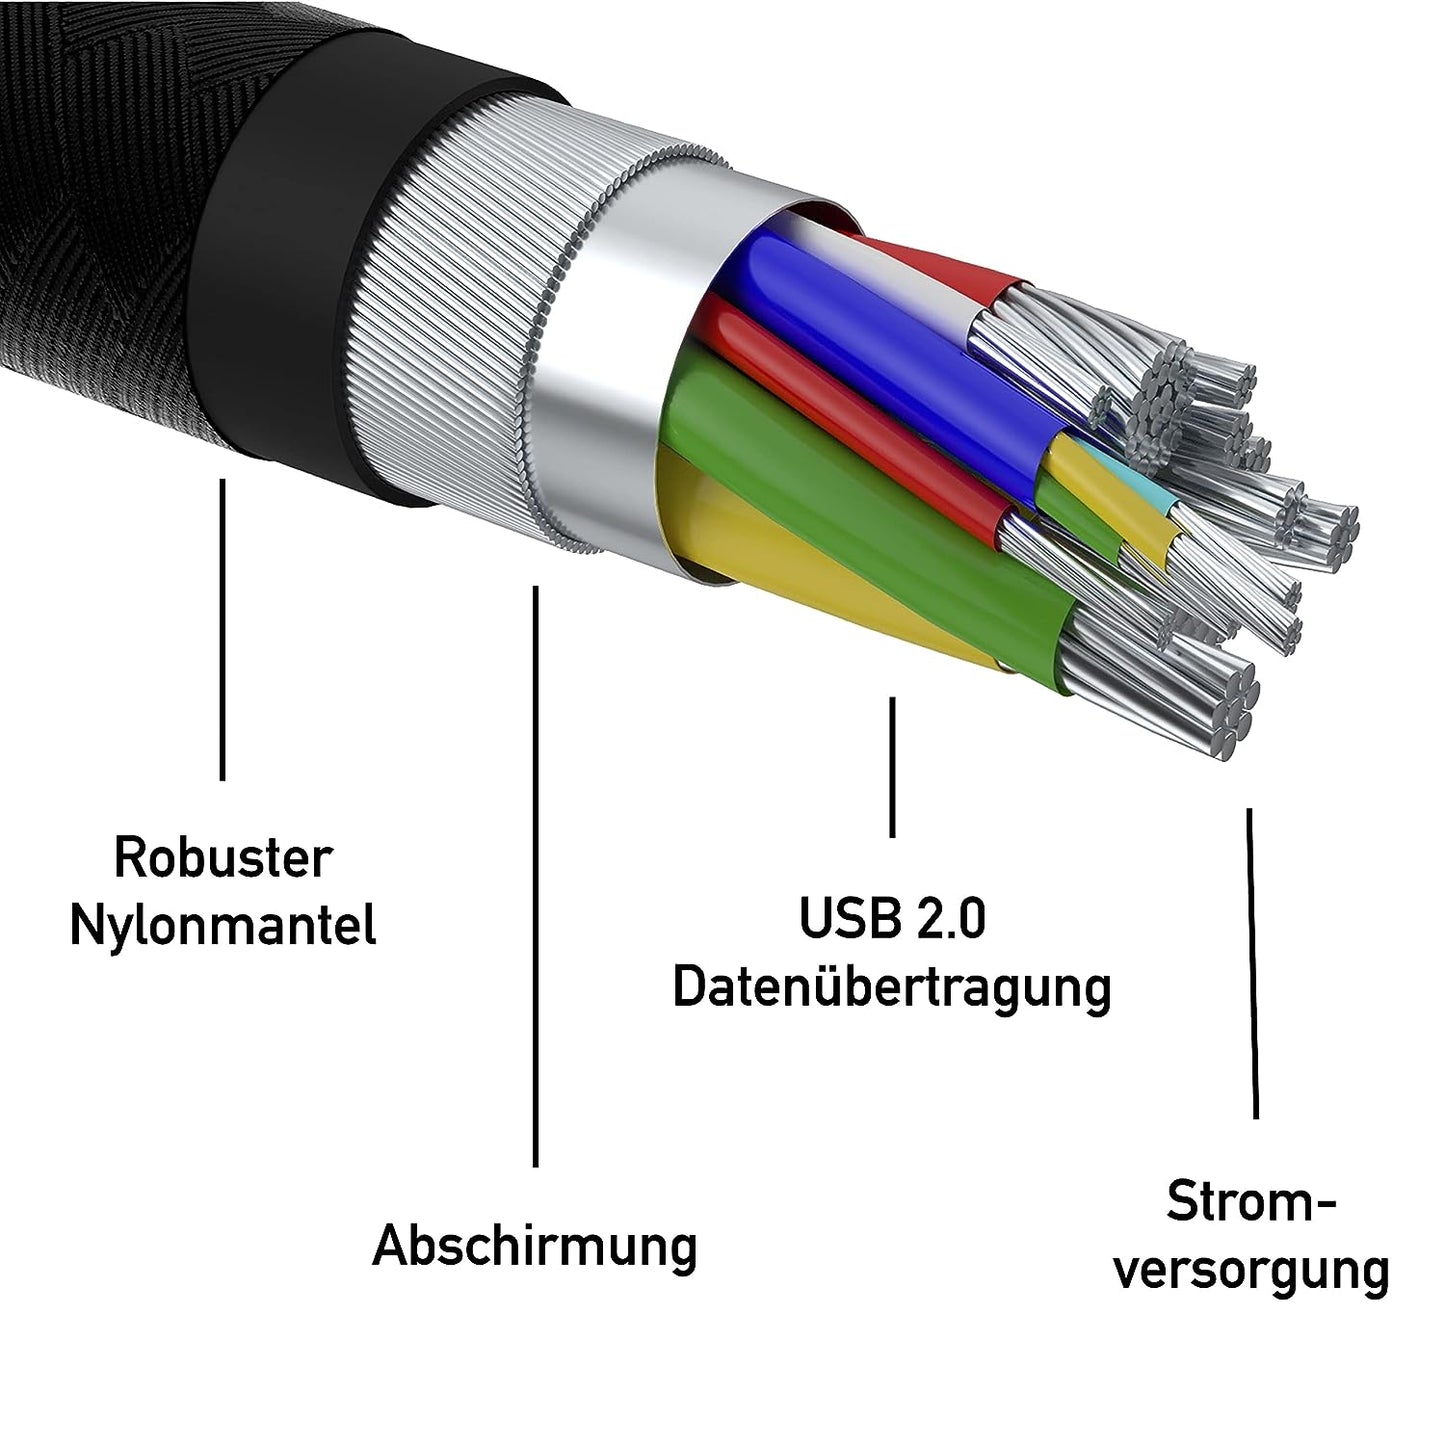 60 Watt USB-C zu USB-A Ladekabel Set | 2 Stück | USB 2.0 | 1,5m